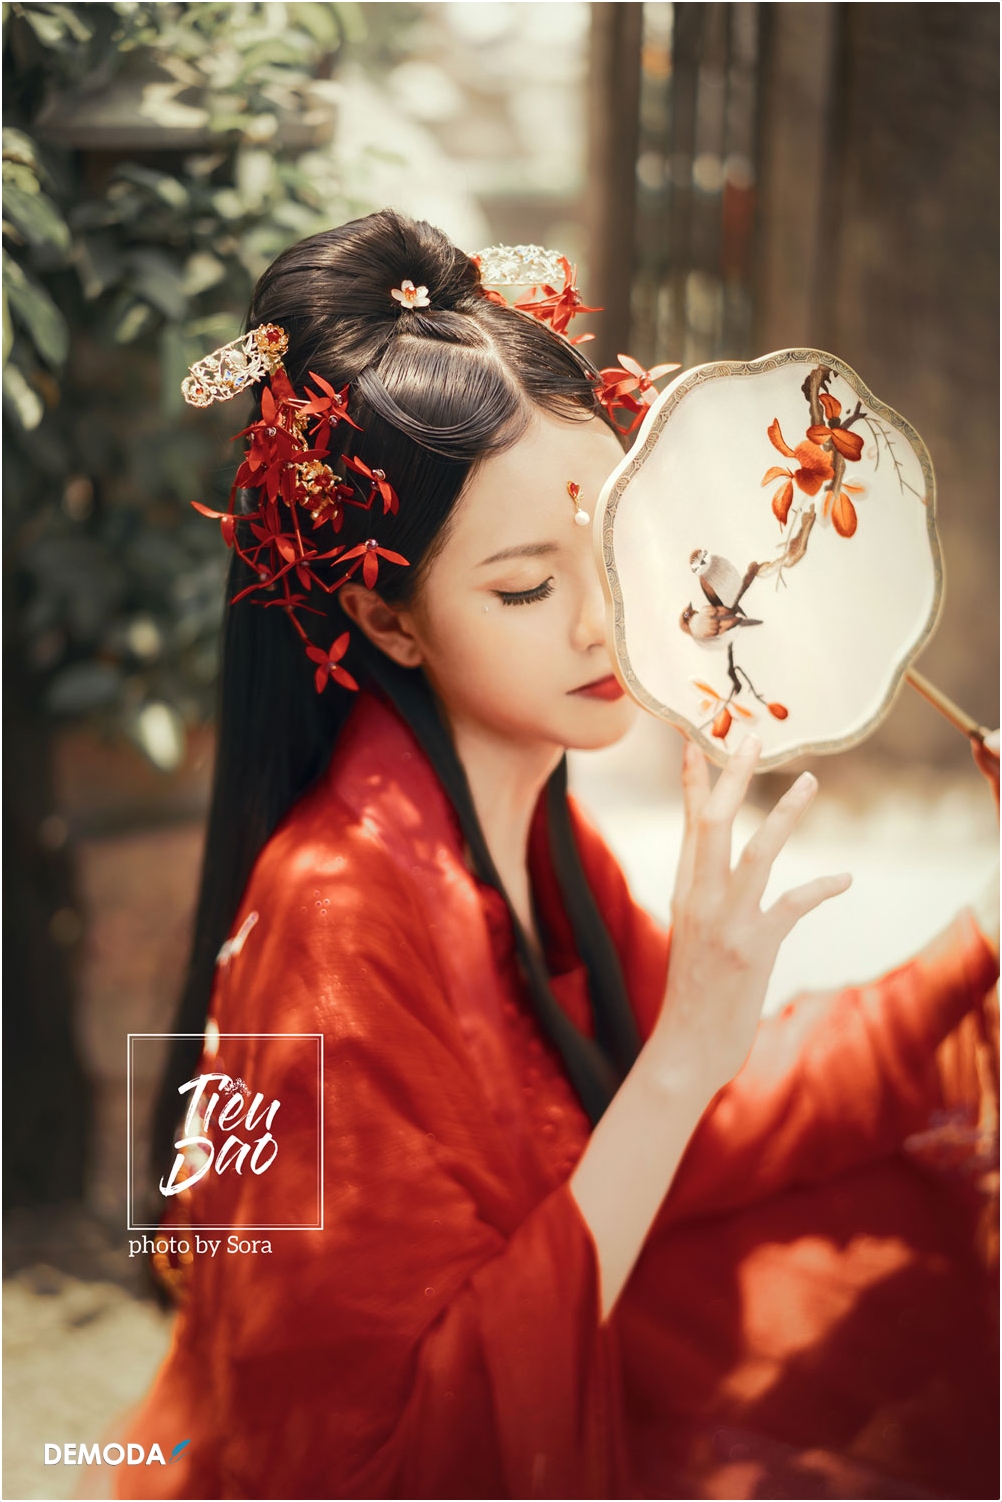 Top 50 Thắng Cảnh đẹp ở Trung Quốc Xưởng Tranh Waki